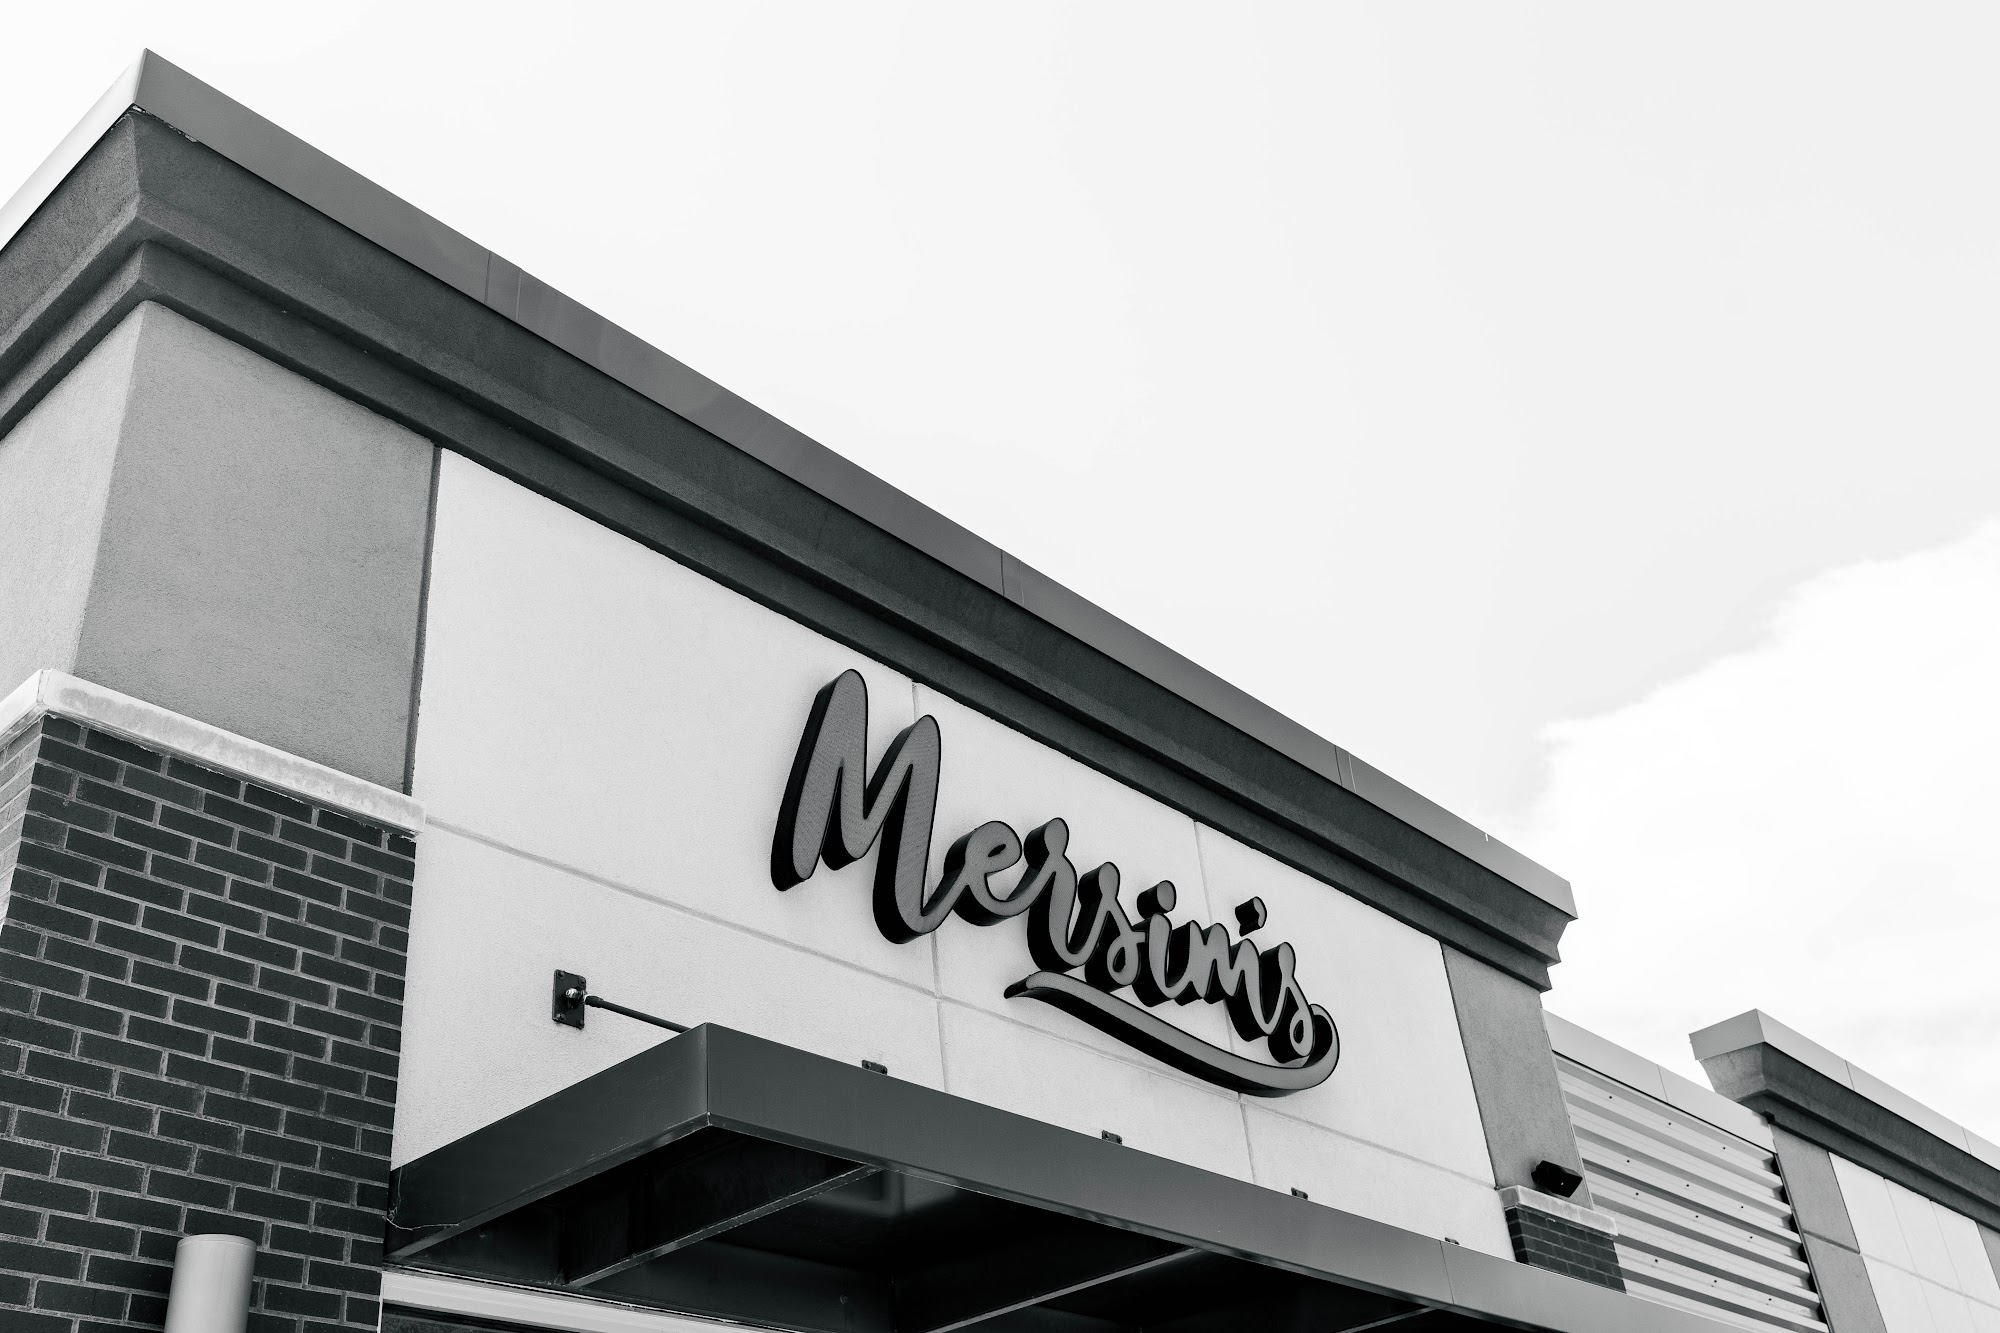 Mersim's | Bosnian + American Restaurant